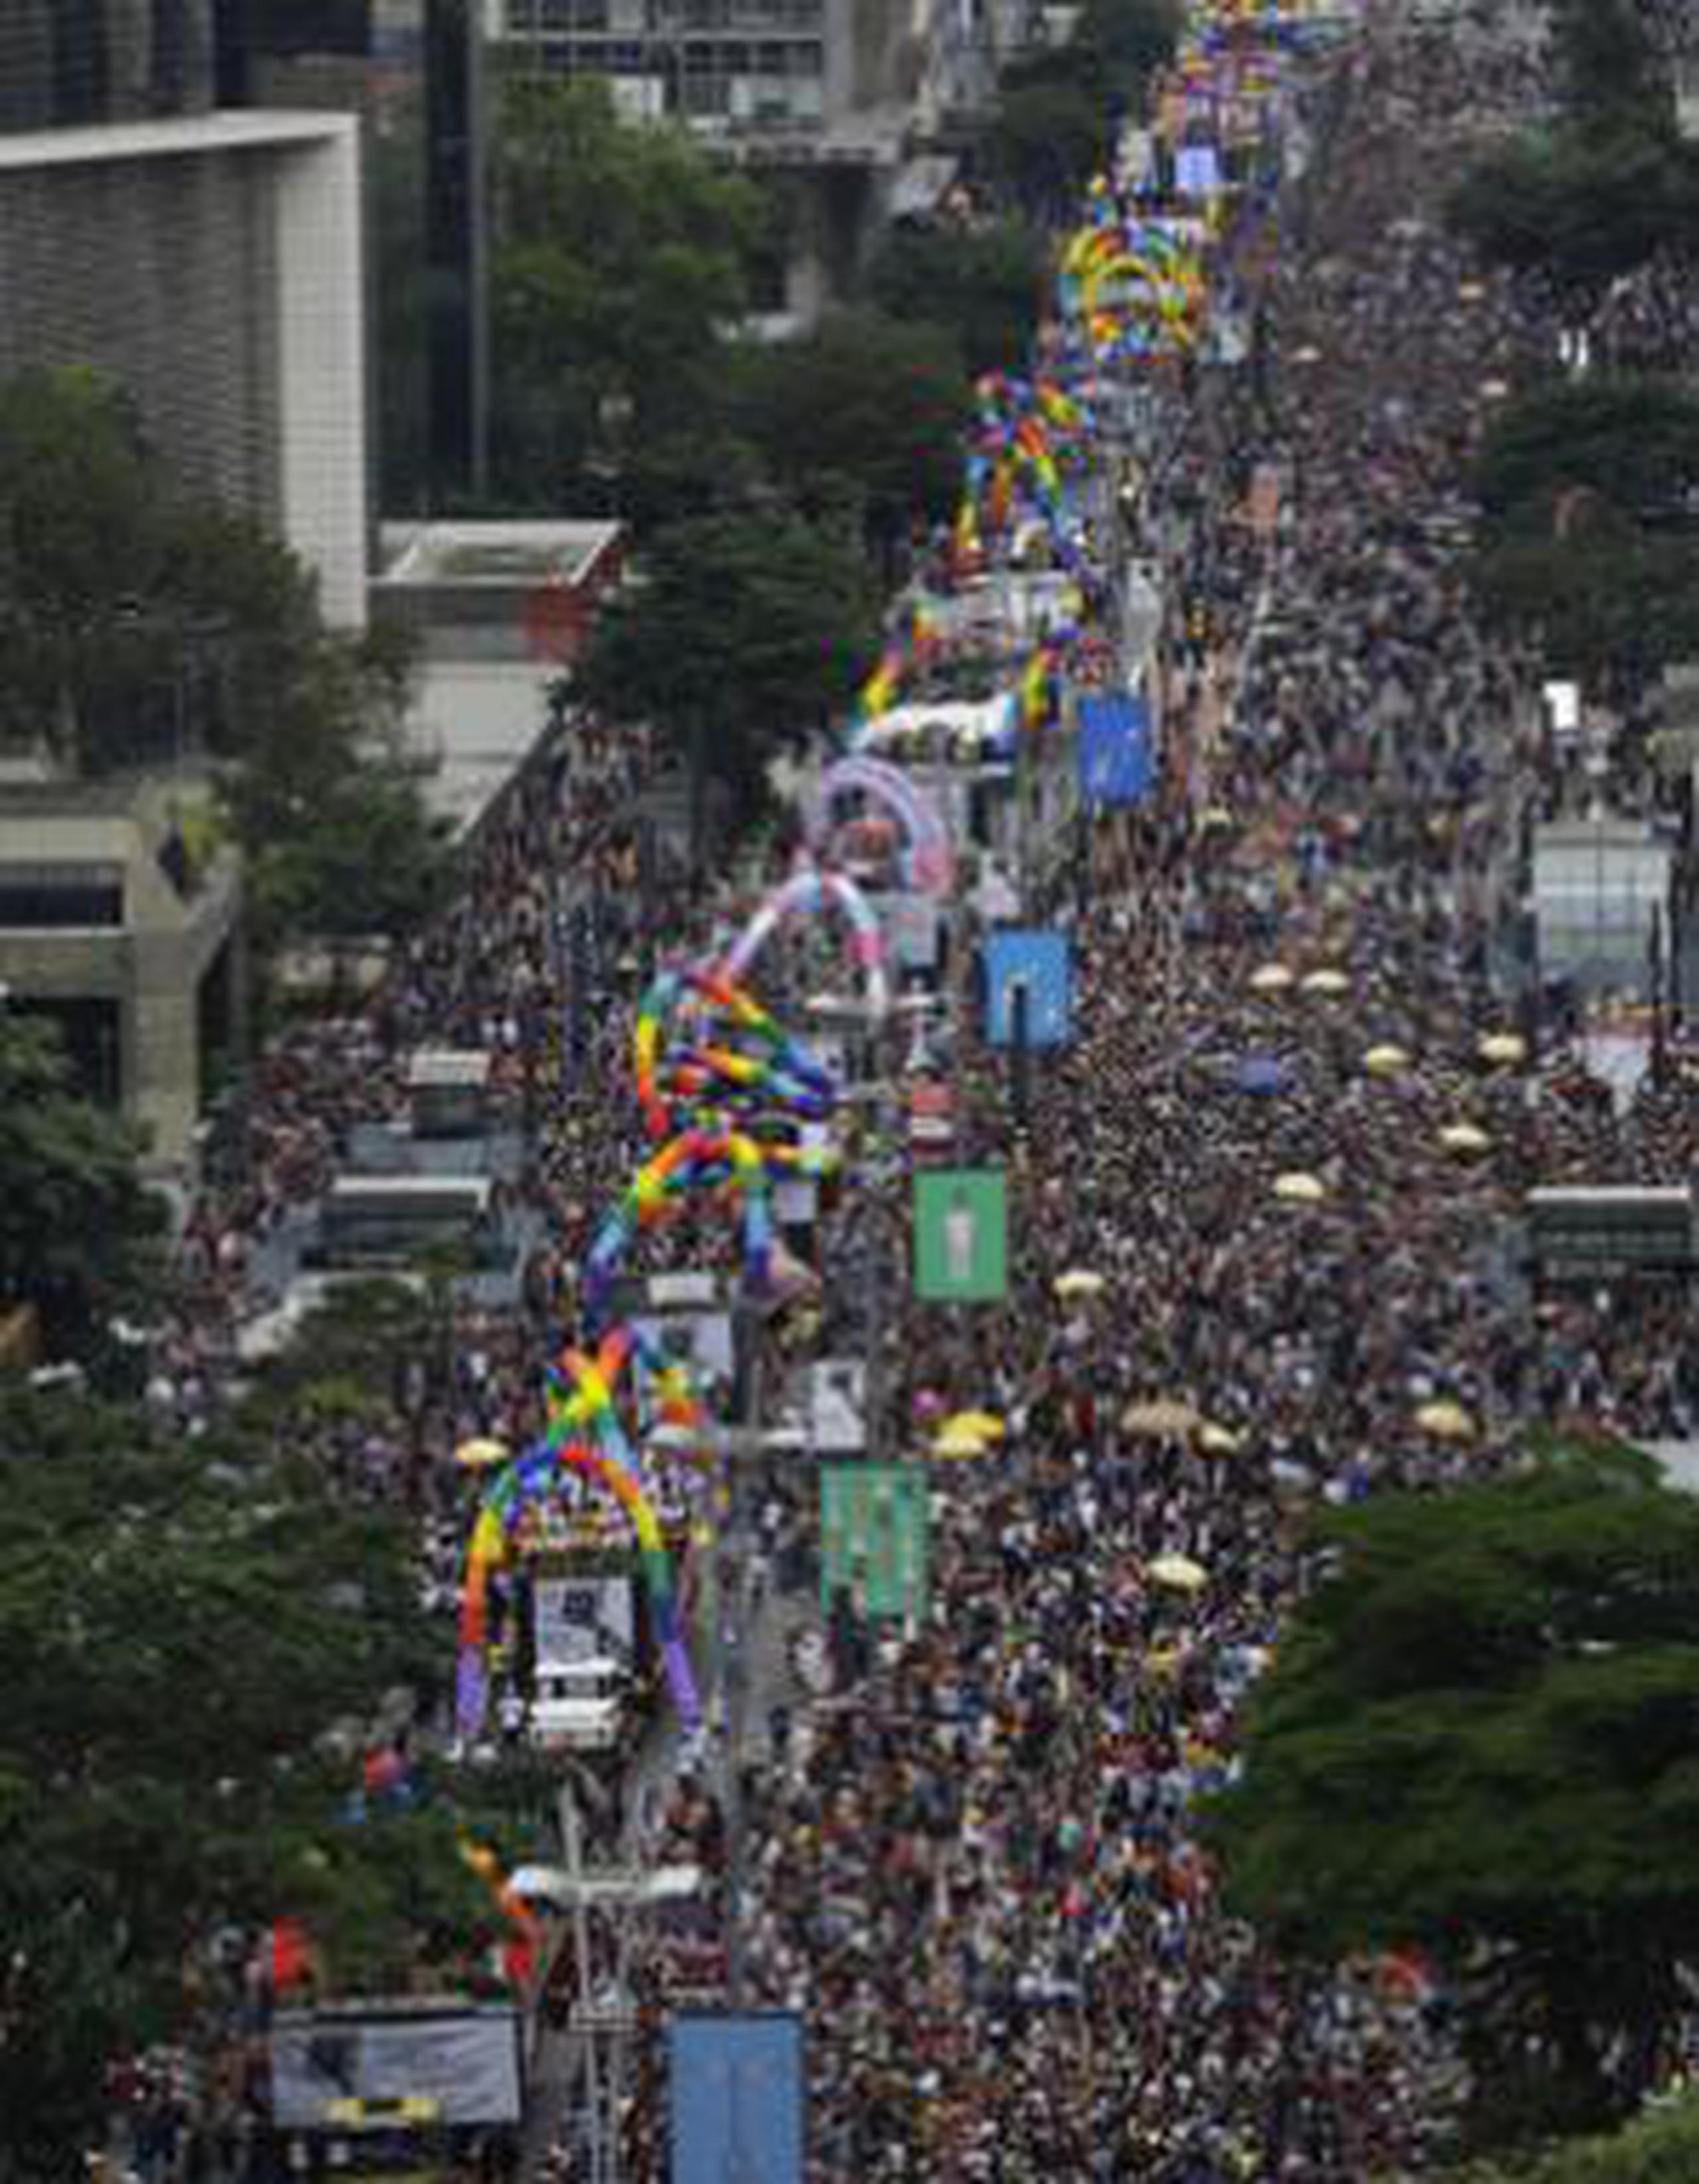 En las calles de los alrededores de la icónica Avenida Paulista, centenas de miles de personas de todas las edades lucían las conocidas banderas arco iris, además de disfraces de variados personajes y adornos multicolores. (AP)